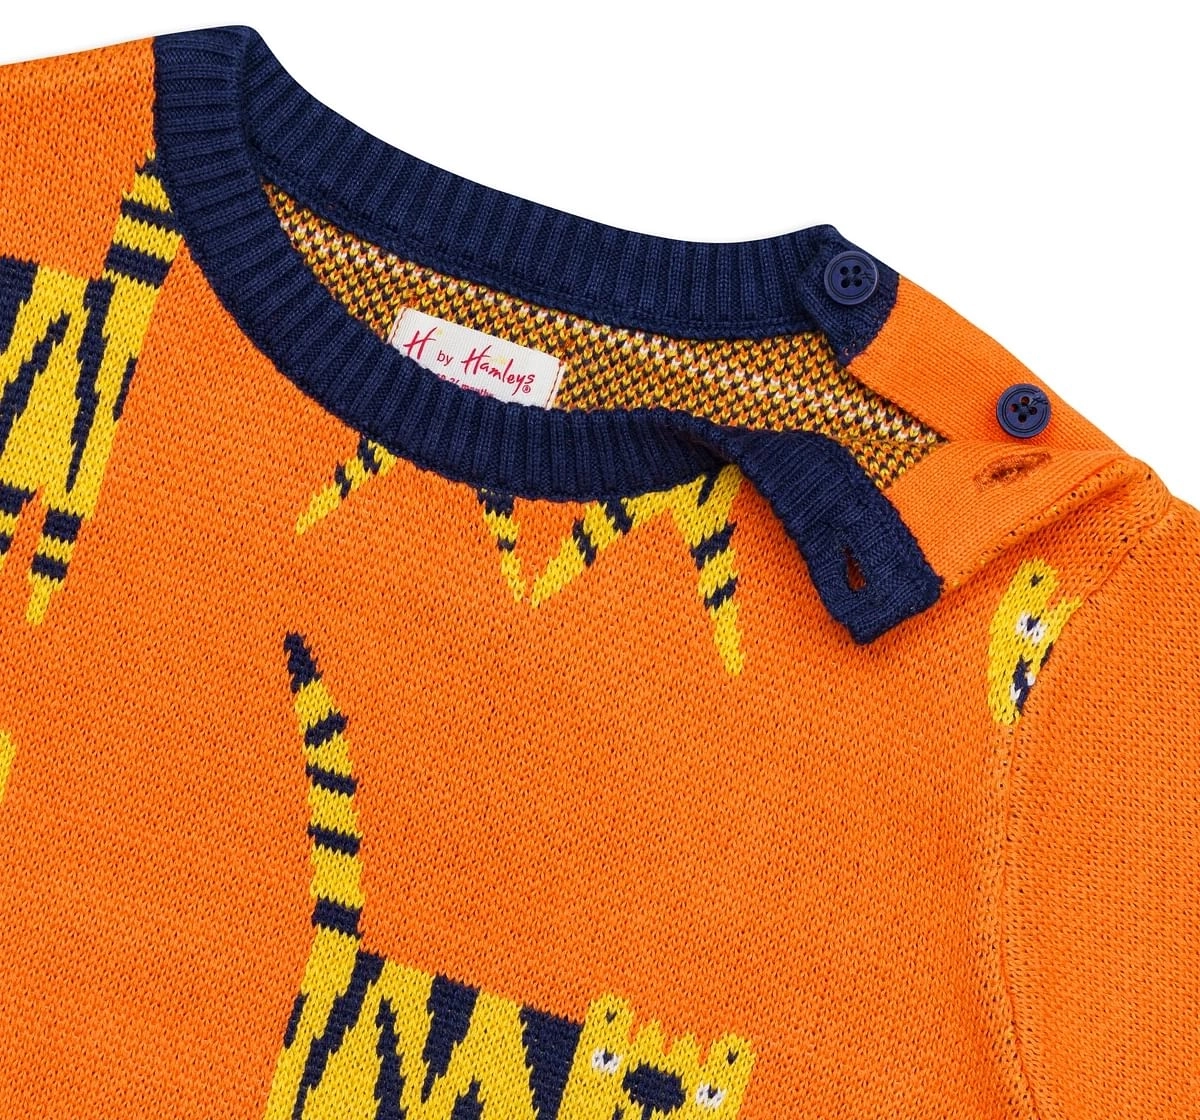 H by Hamleys Boys Full Sleeves sweatshirts -Pack of 1-Orange